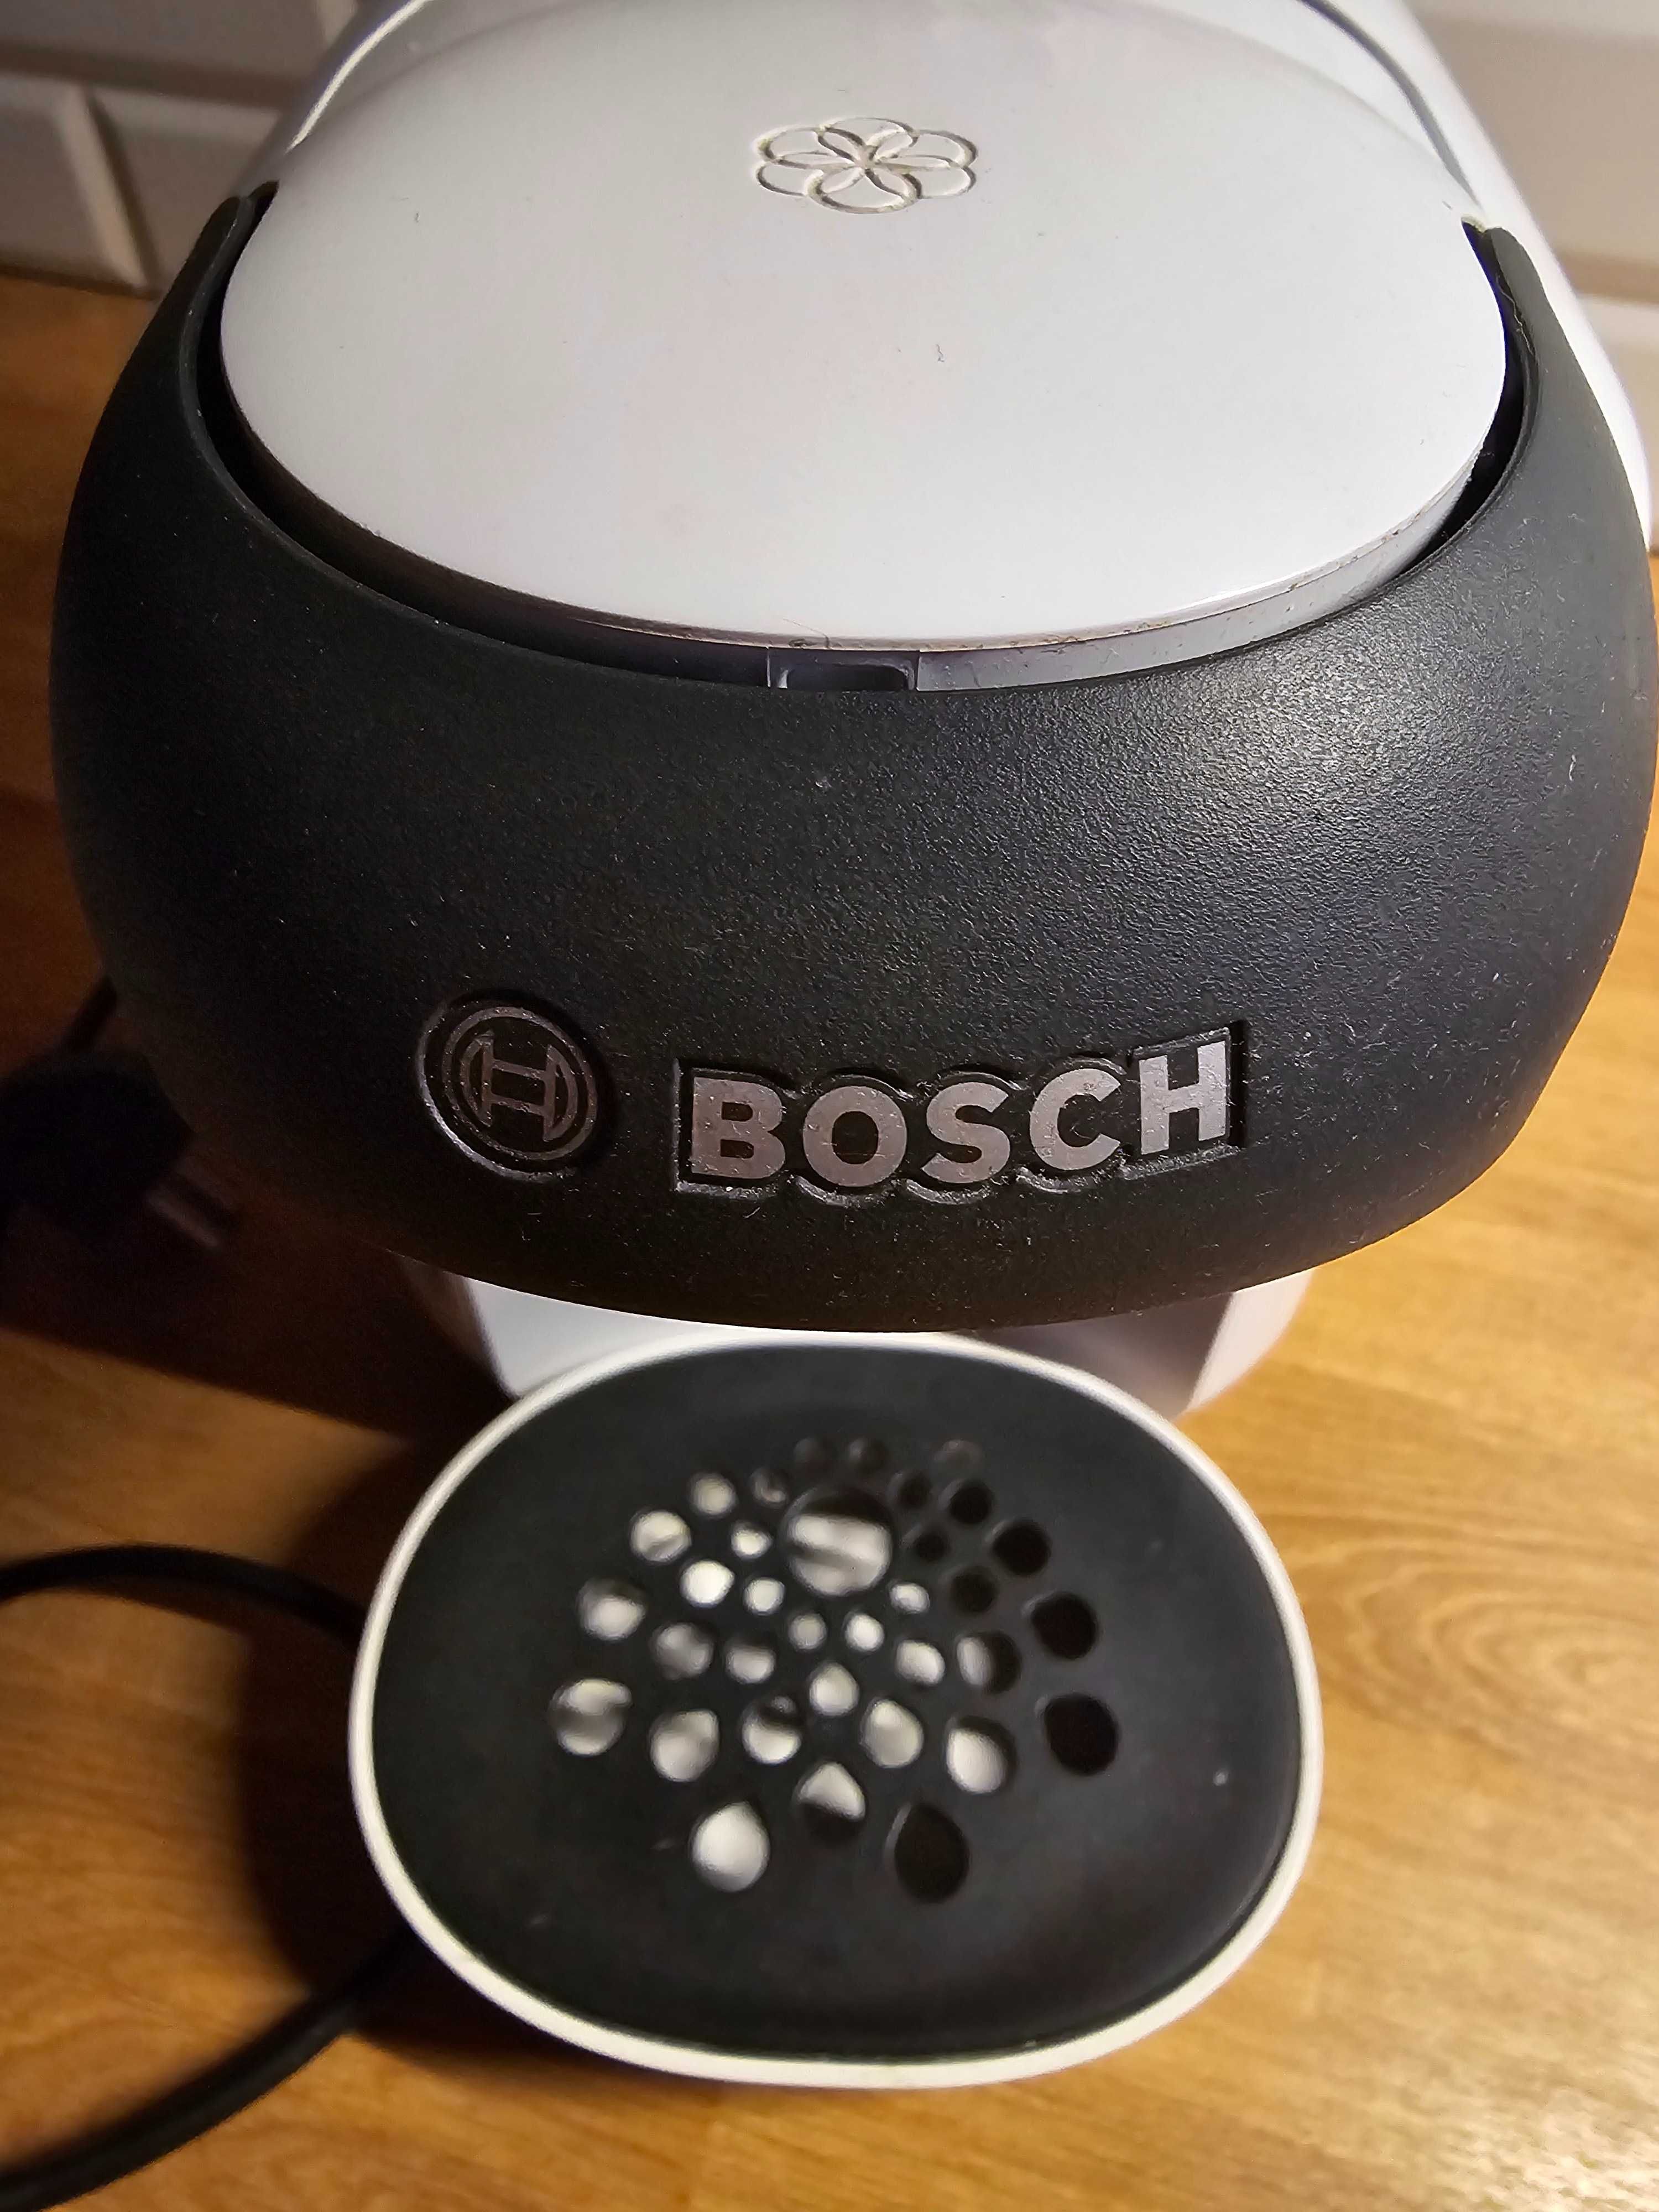 ekspres kapsułkowy Bosch jak nowy